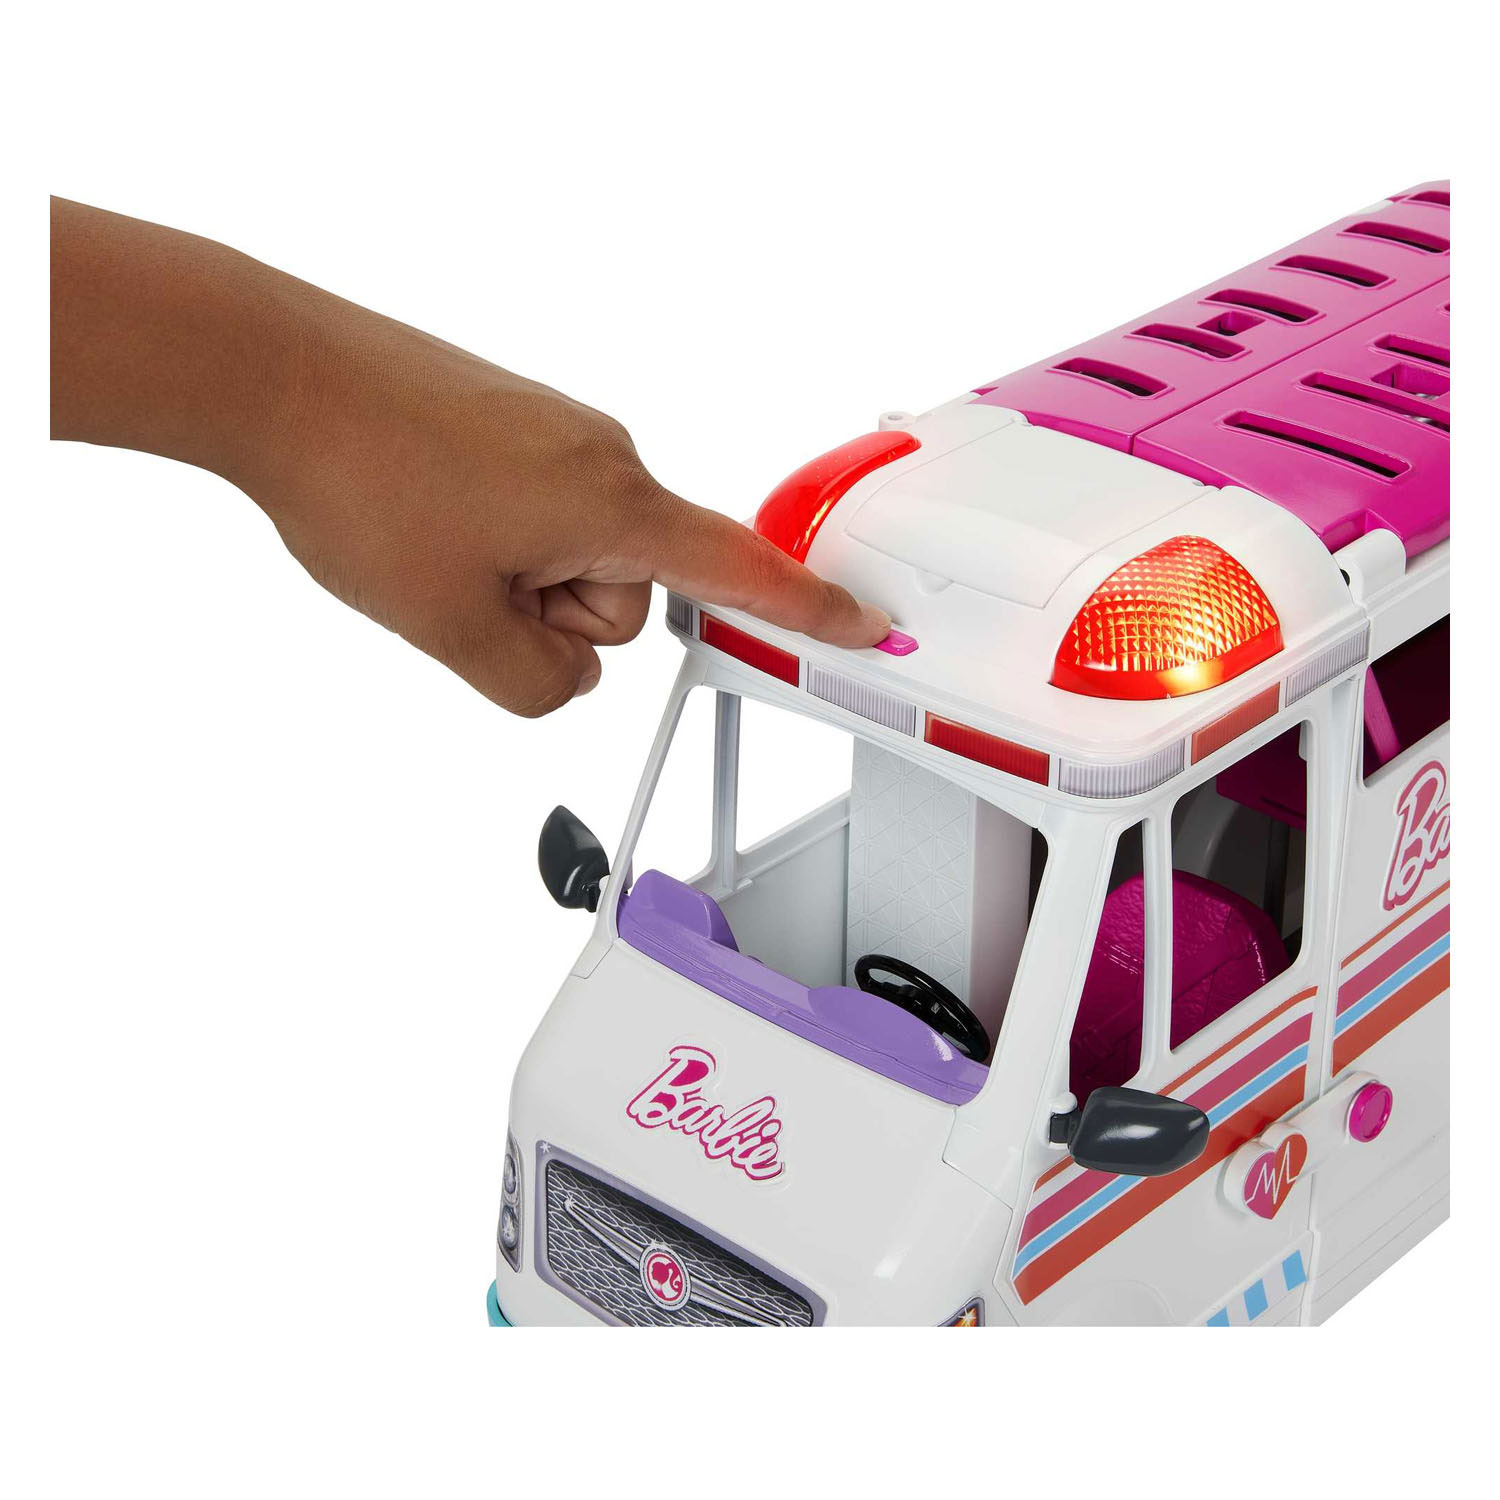 Barbie Ambulance Clinic Spielset